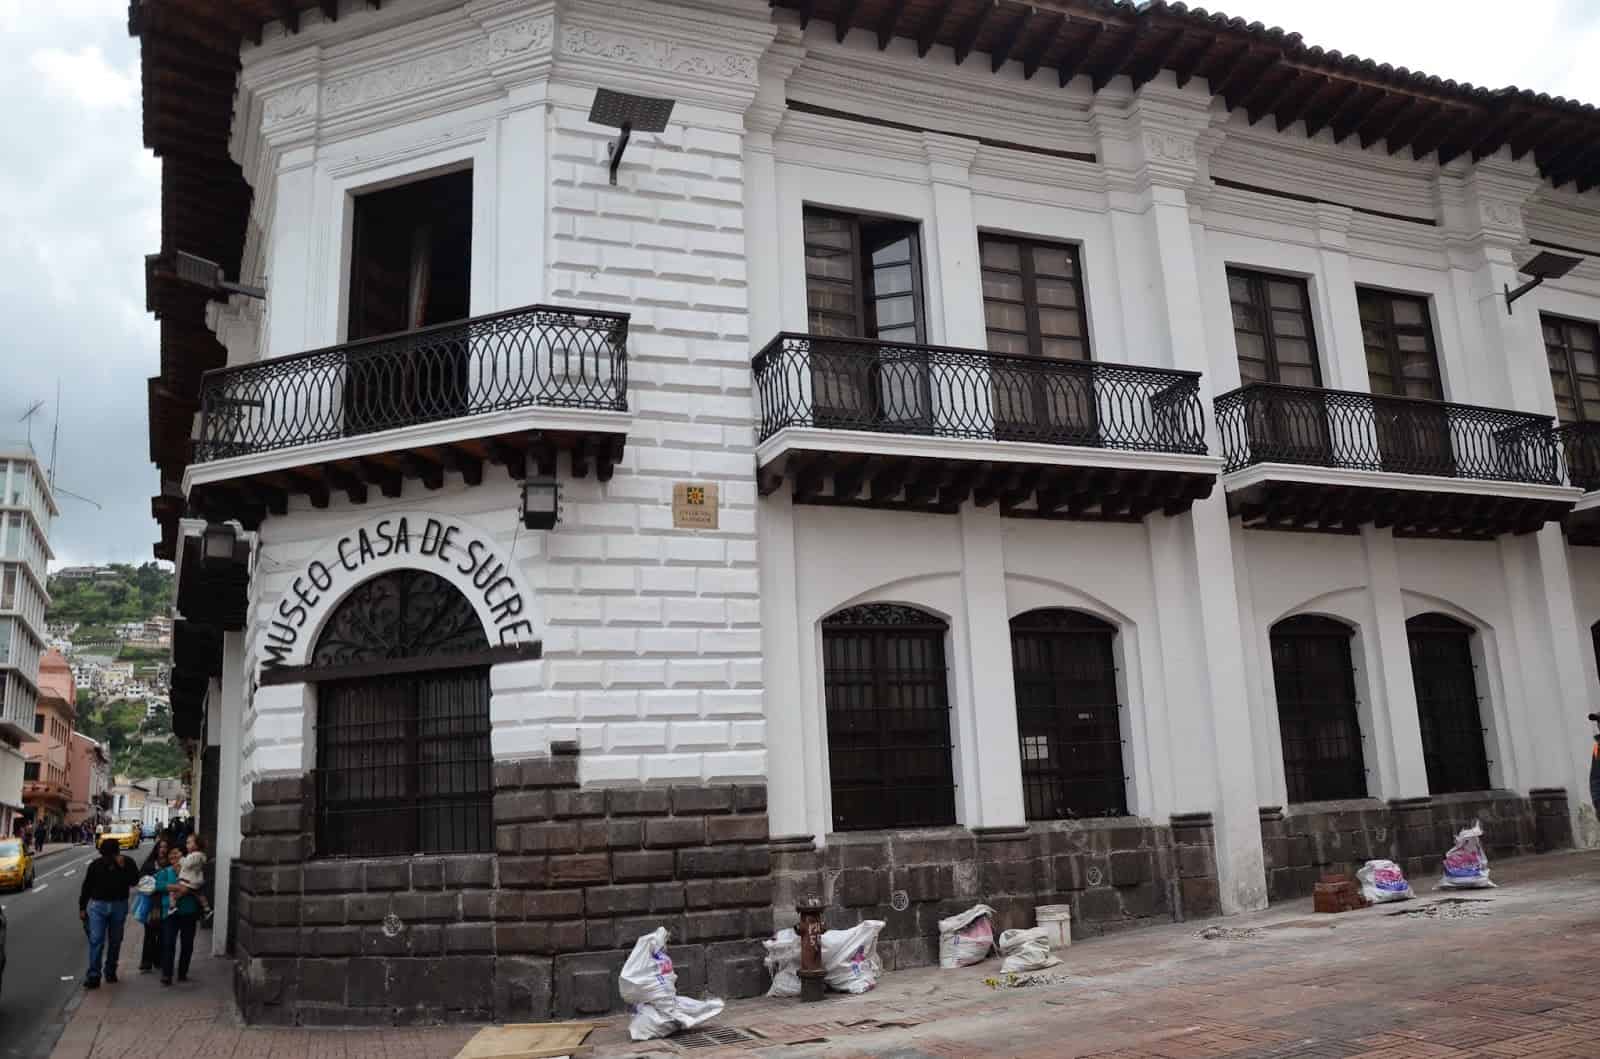 Sucre House Museum in Quito, Ecuador